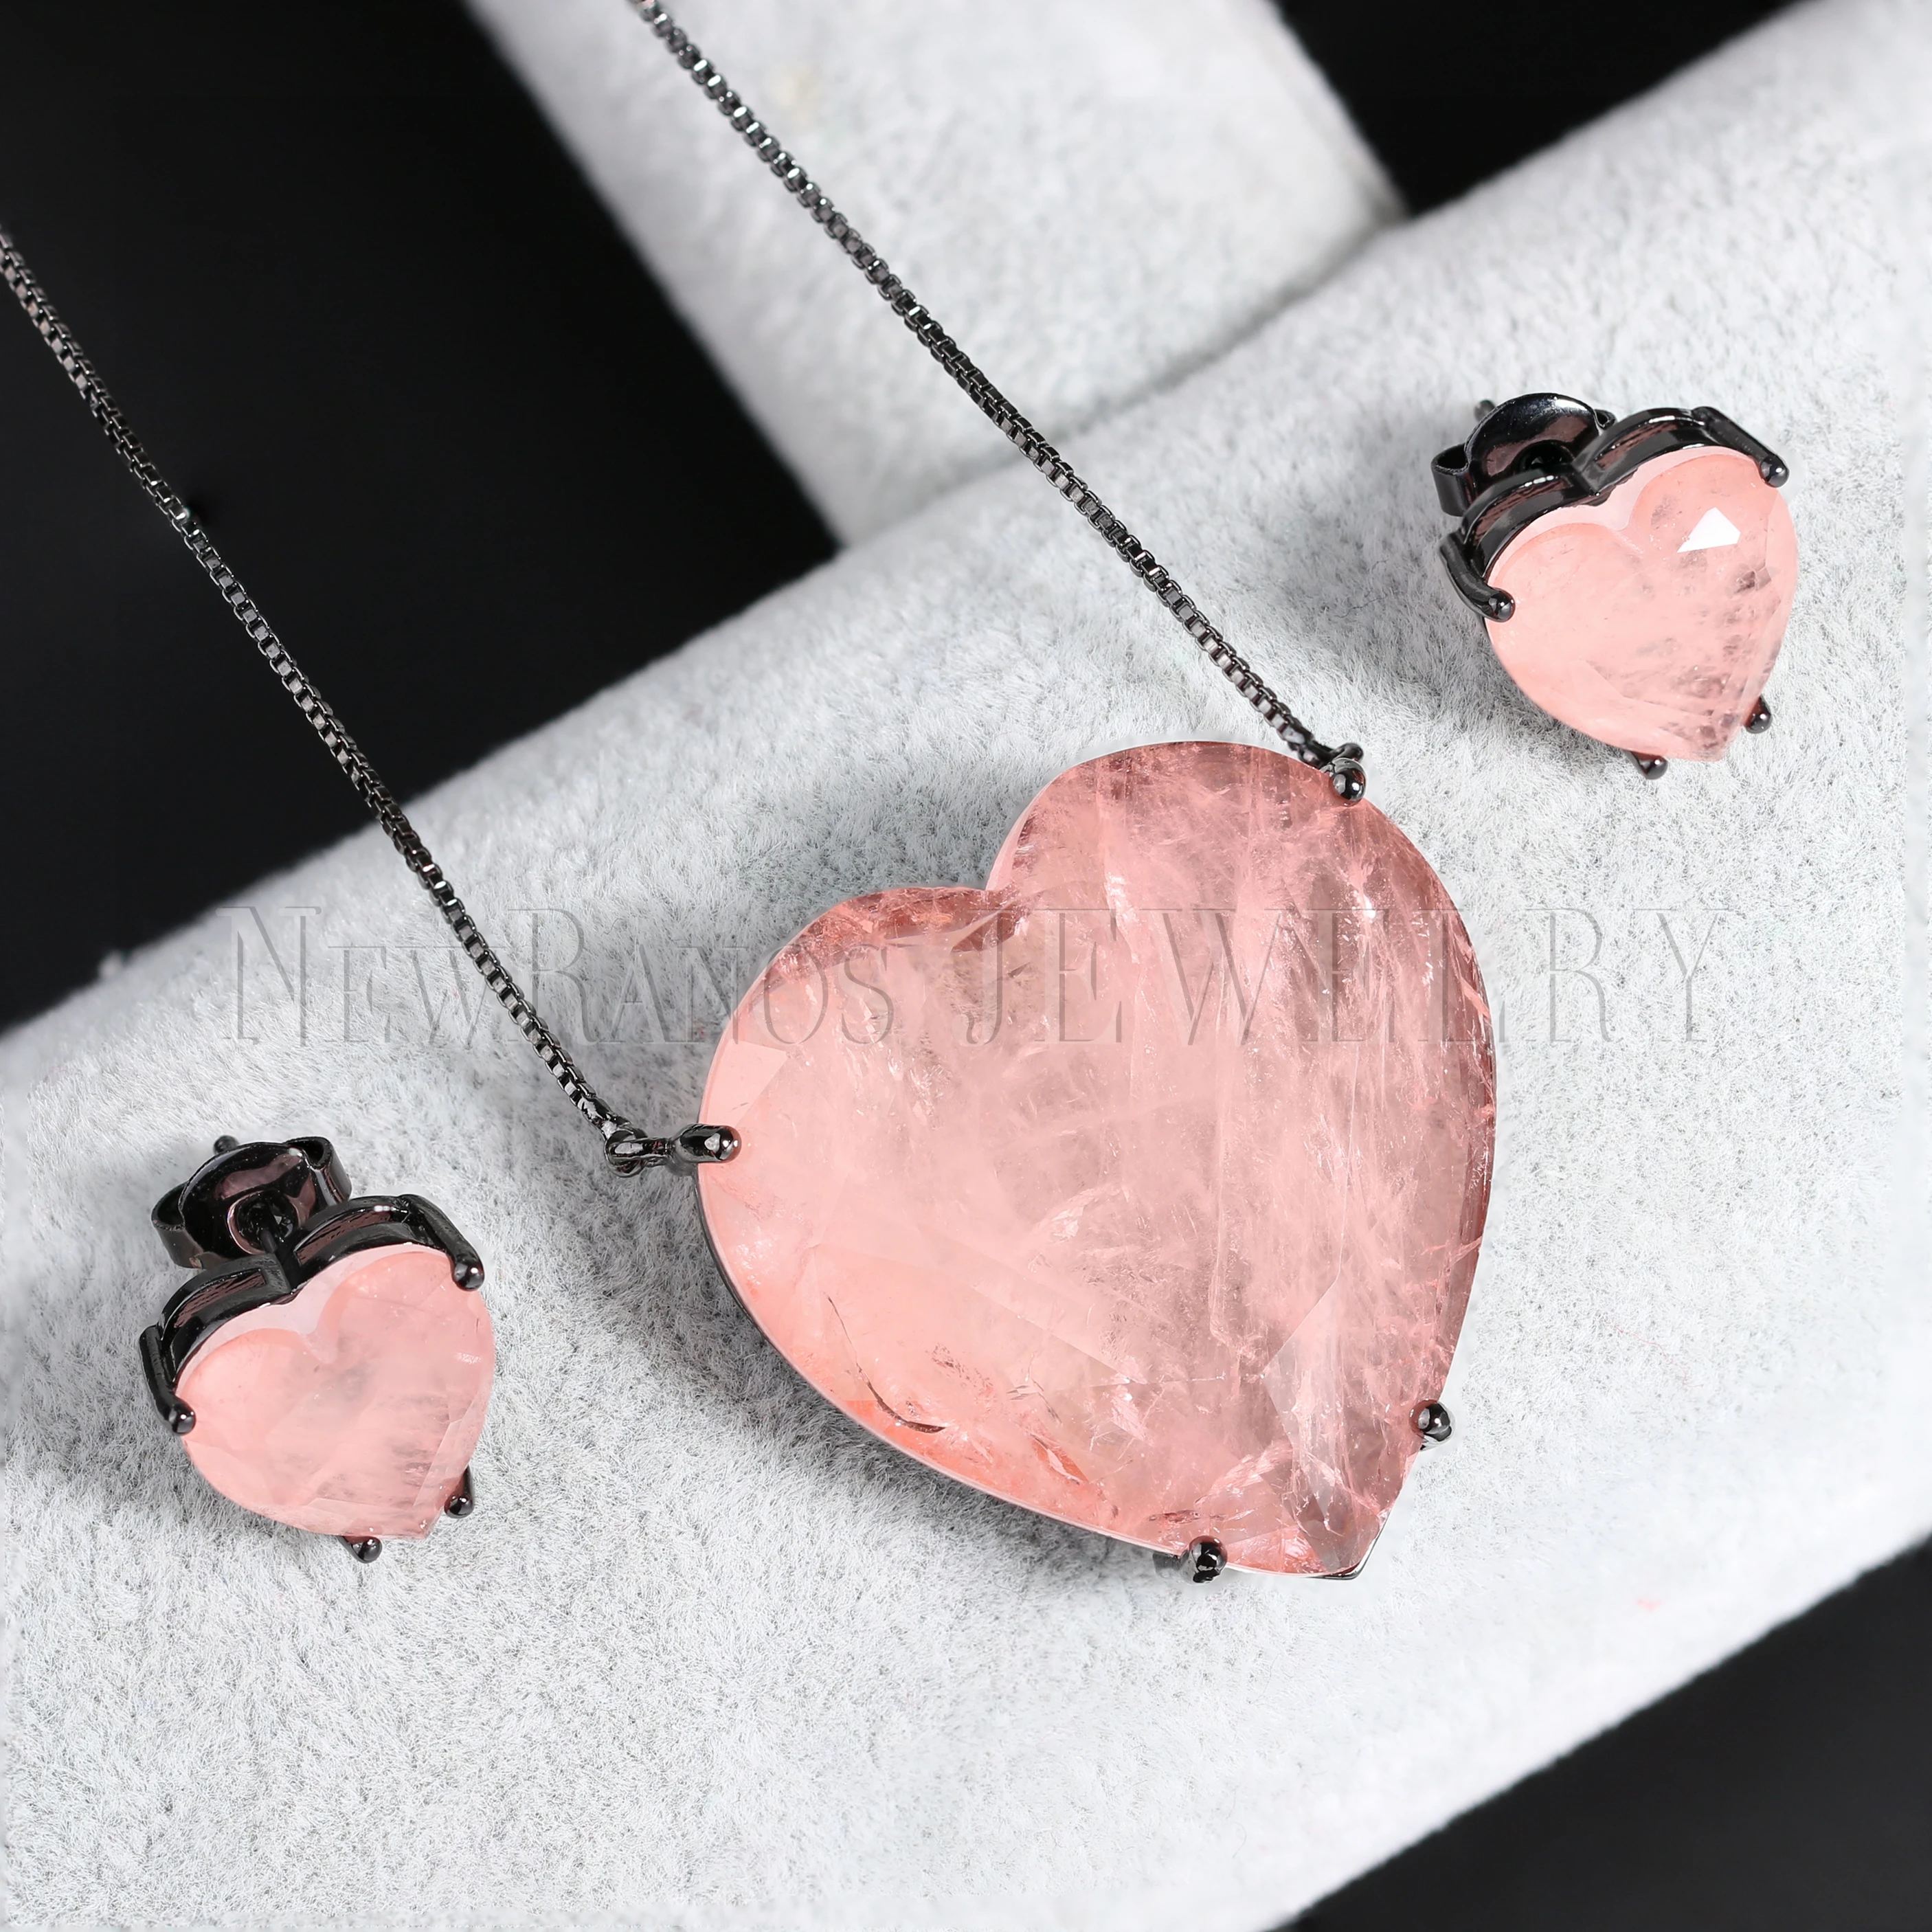 Newranos набор ювелирных изделий с сердечком натуральный камень ожерелье серьги - Фото №1